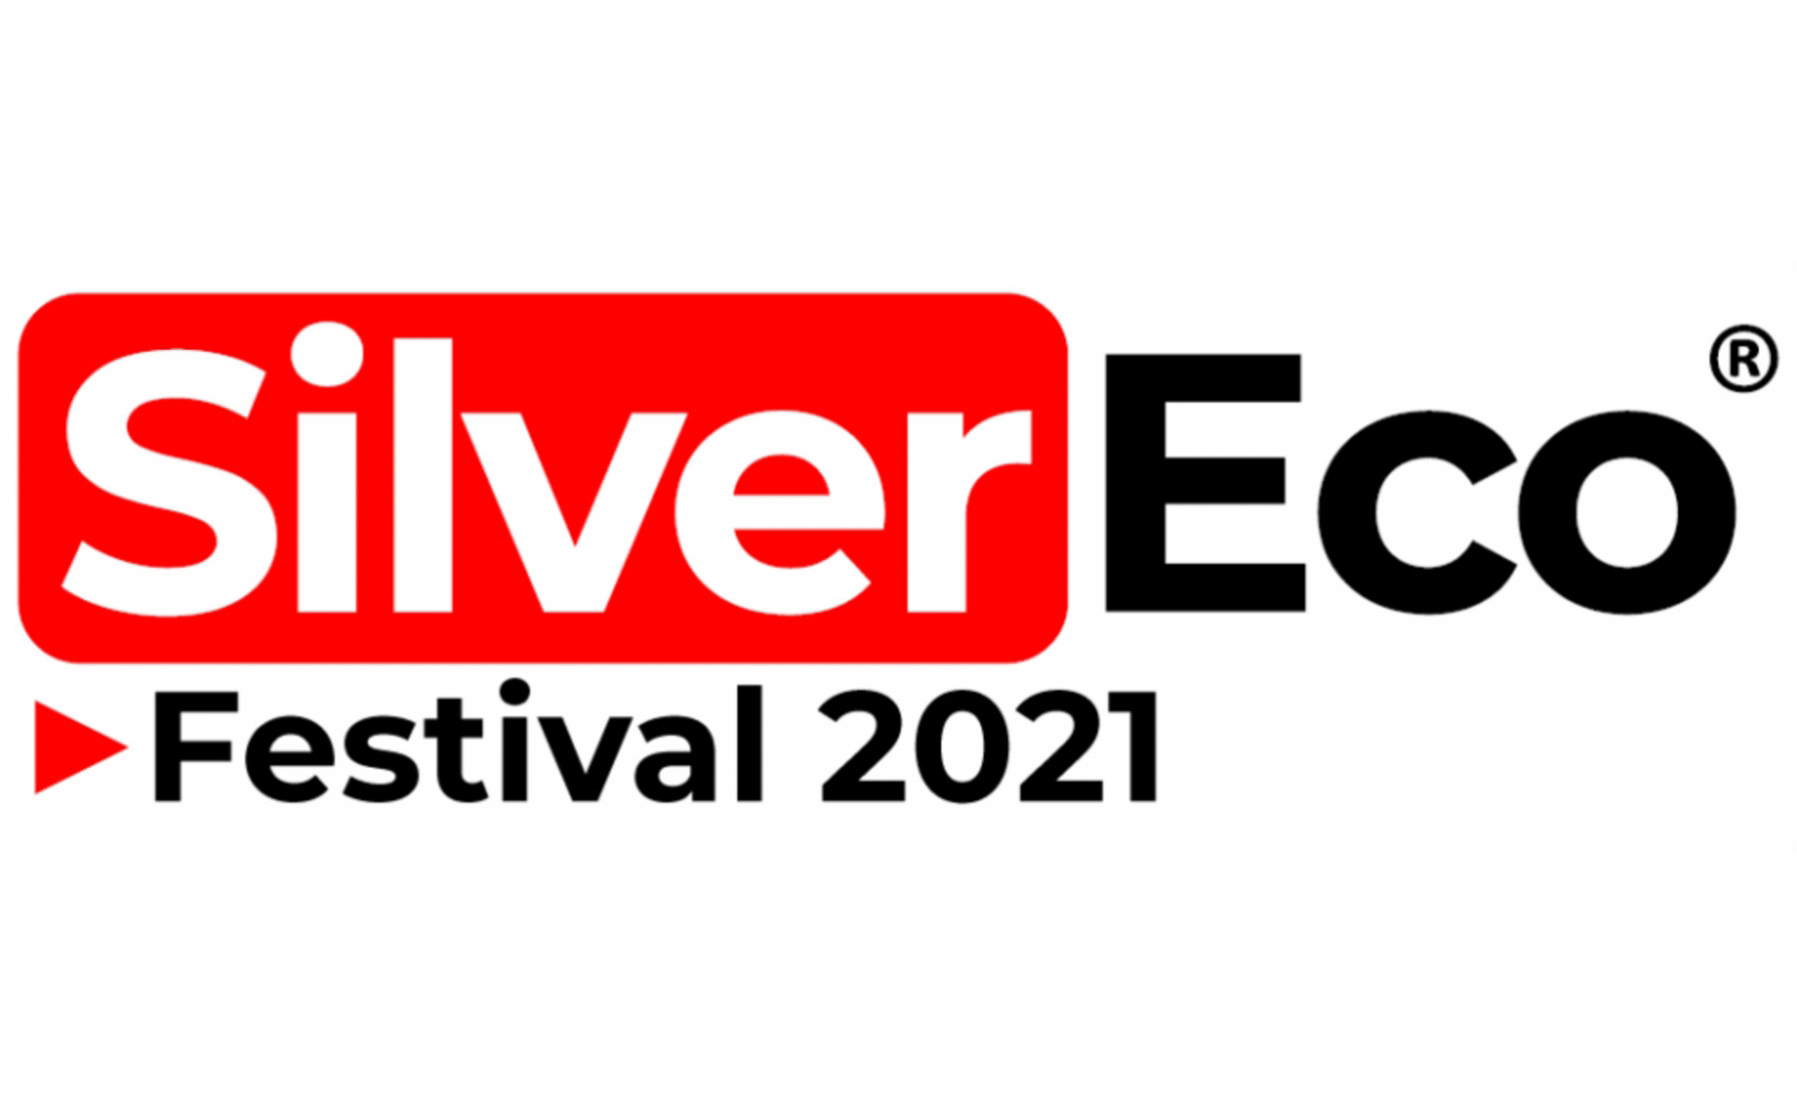 silvereco 2021 festival logo